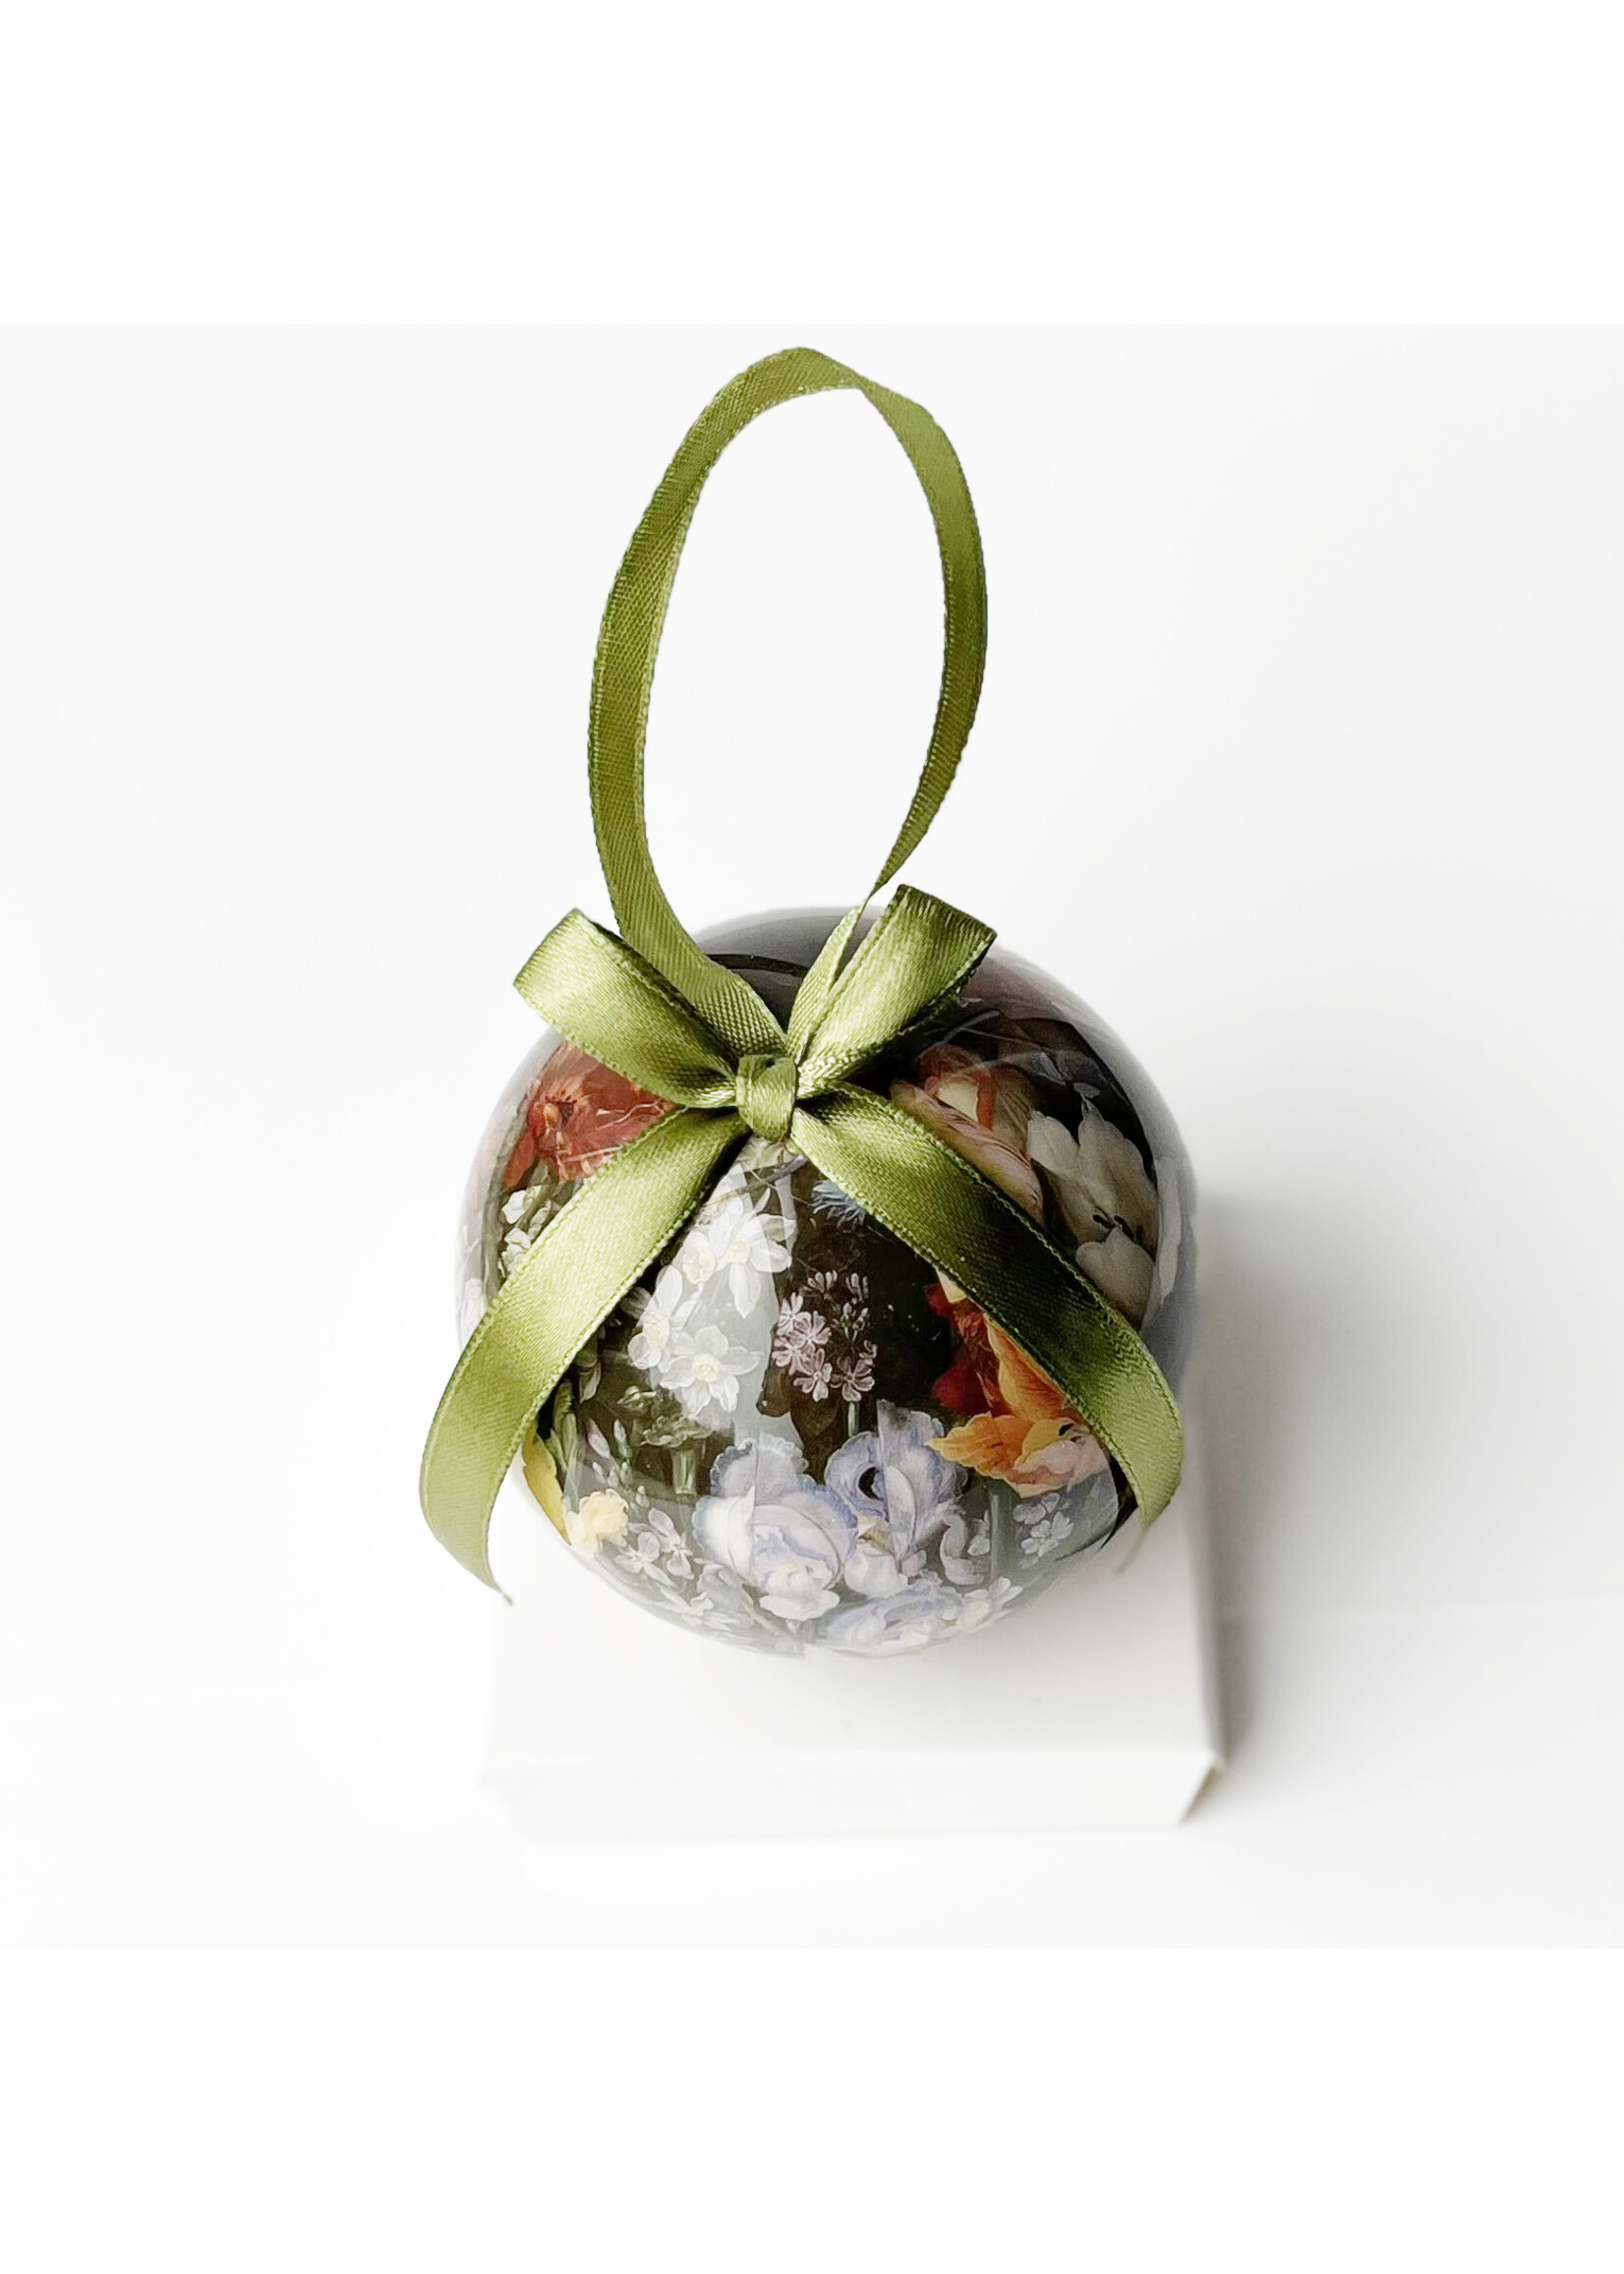 Christmas bauble - Jan Breughel II, Flowers in a Vase